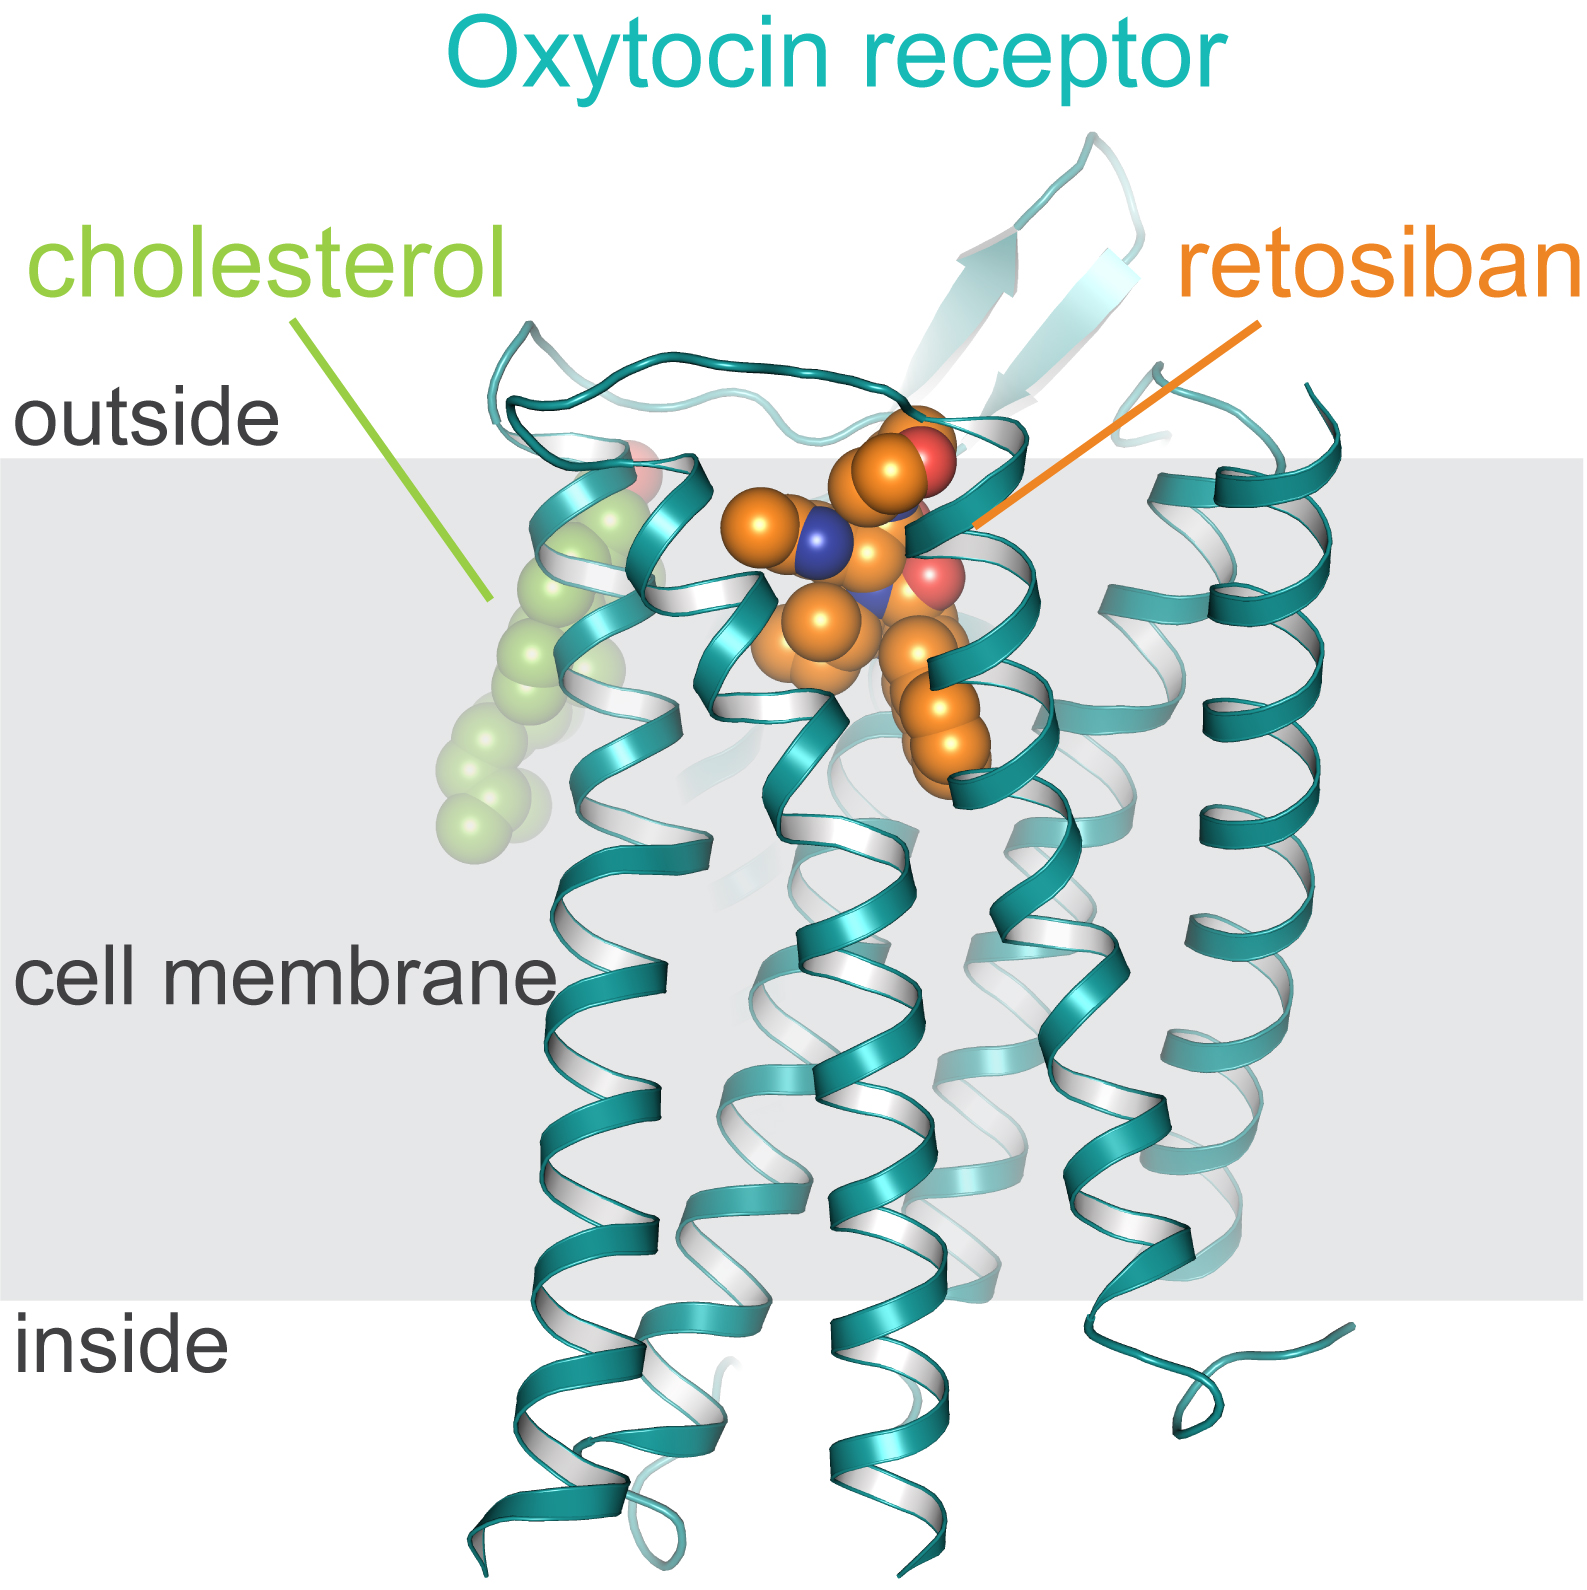 Oxytocin receptor